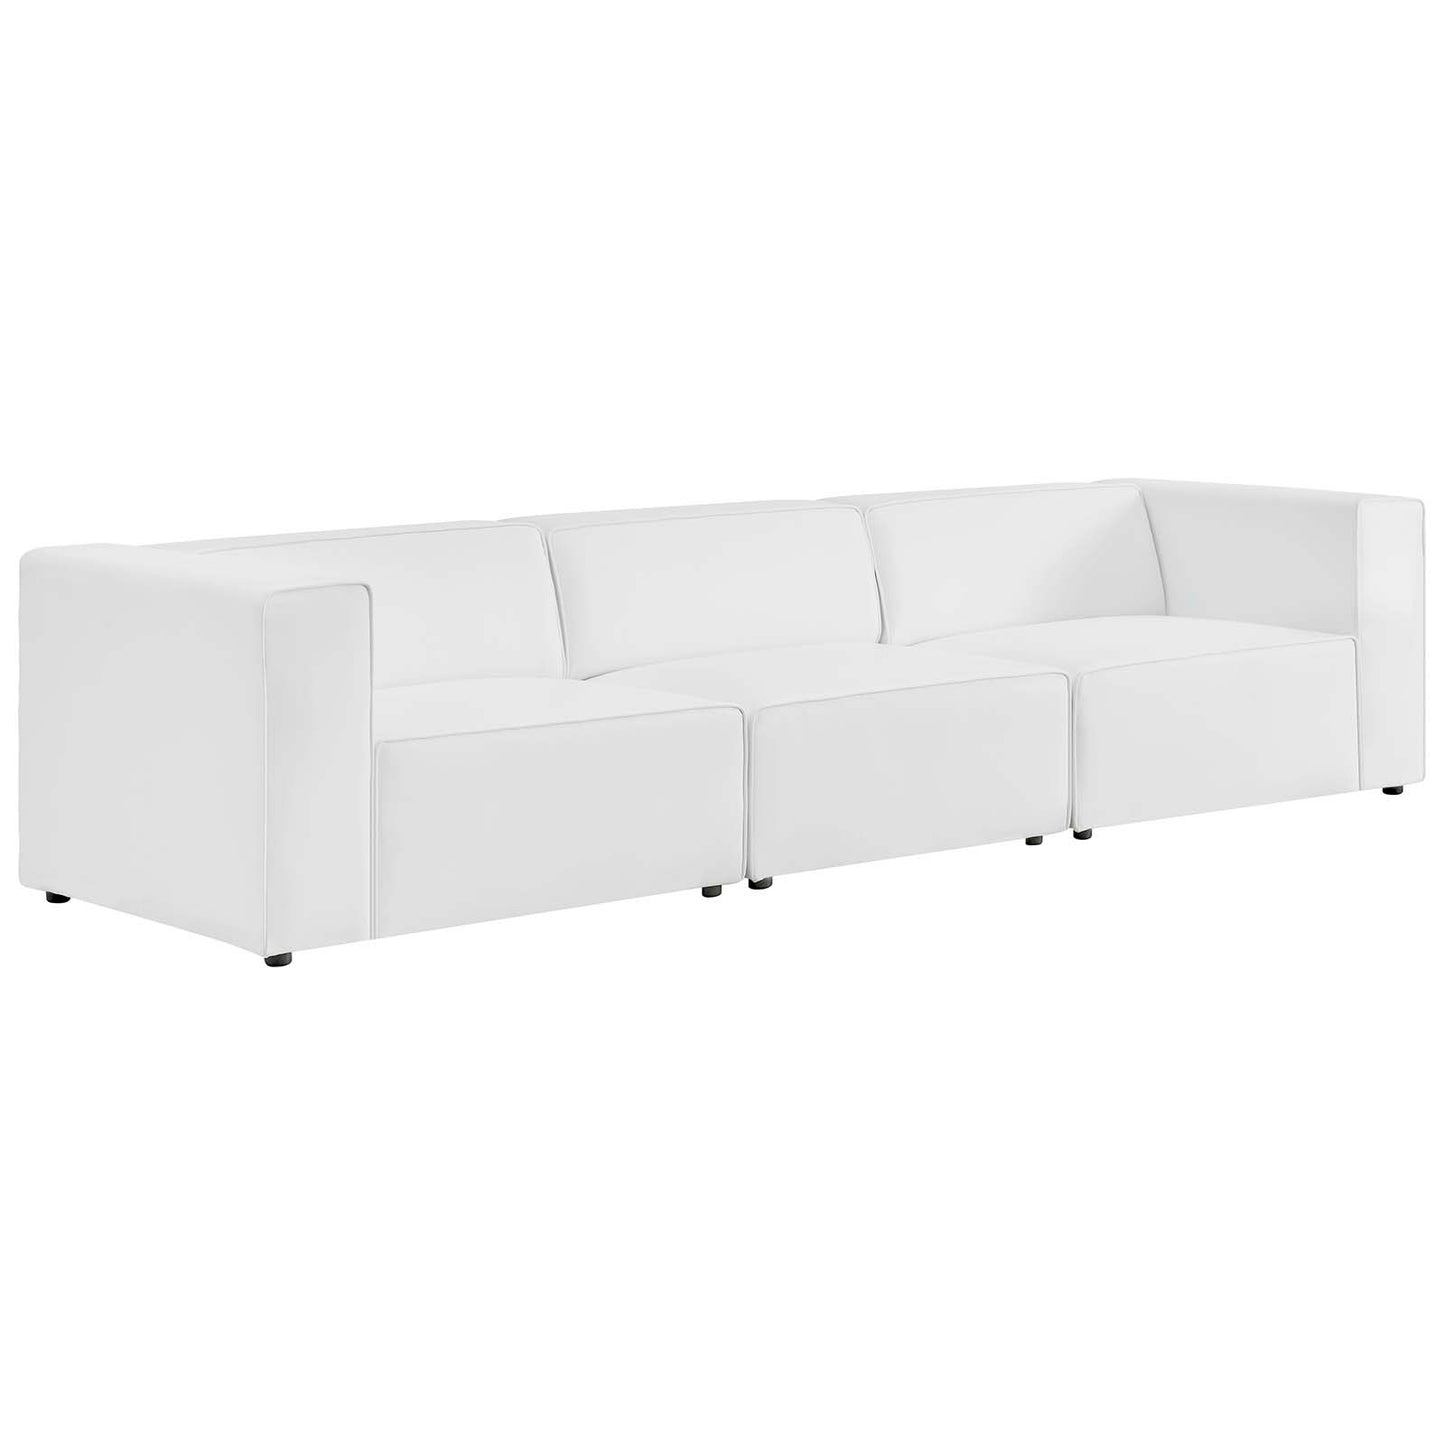 Mingle Vegan Leather 3-Piece Sectional Sofa White EEI-4789-WHI